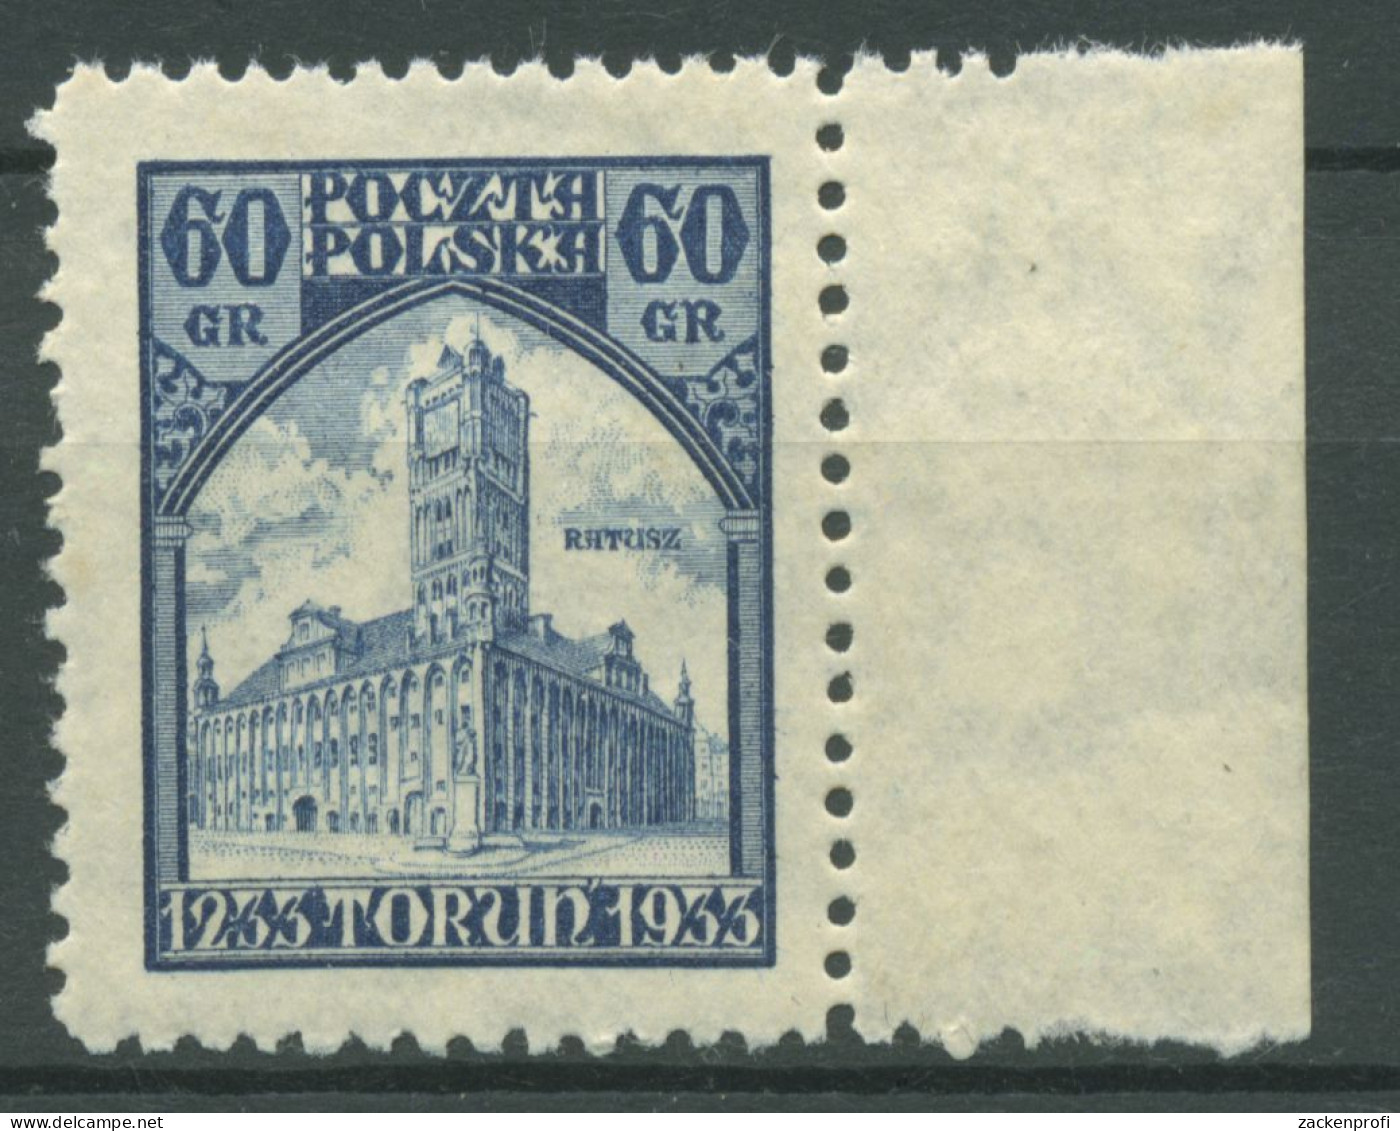 Polen 1933 700 Jahre Thorn 279 Postfrisch - Unused Stamps